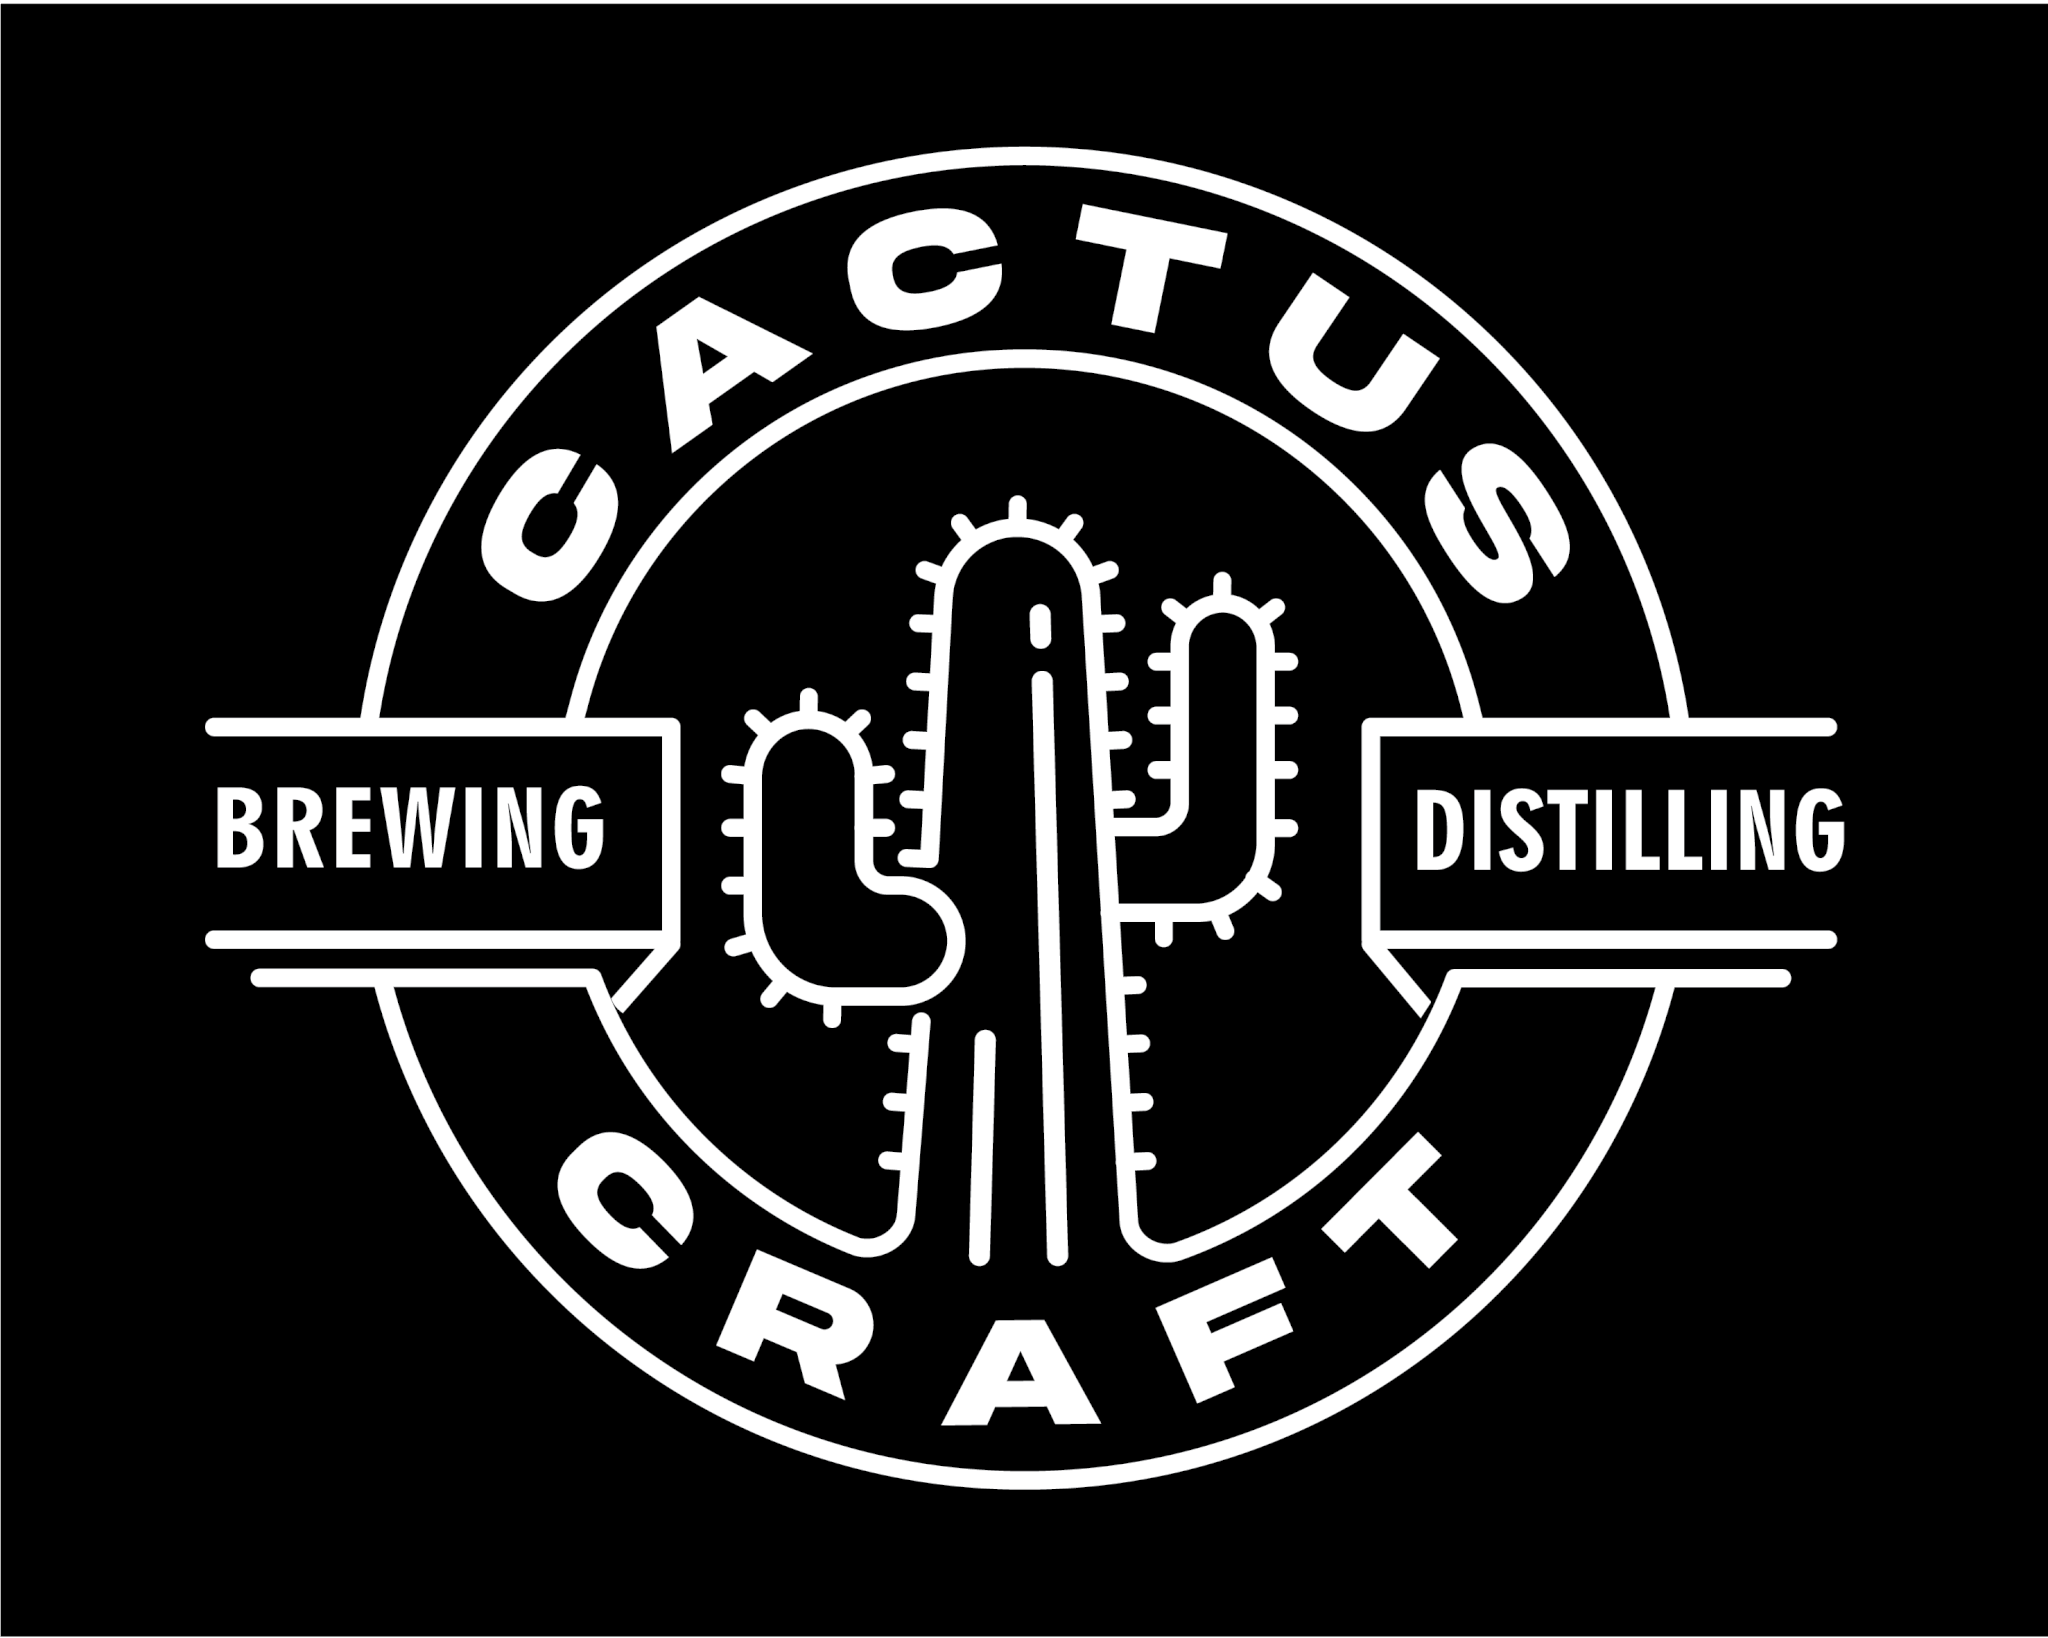 Cactus Craft